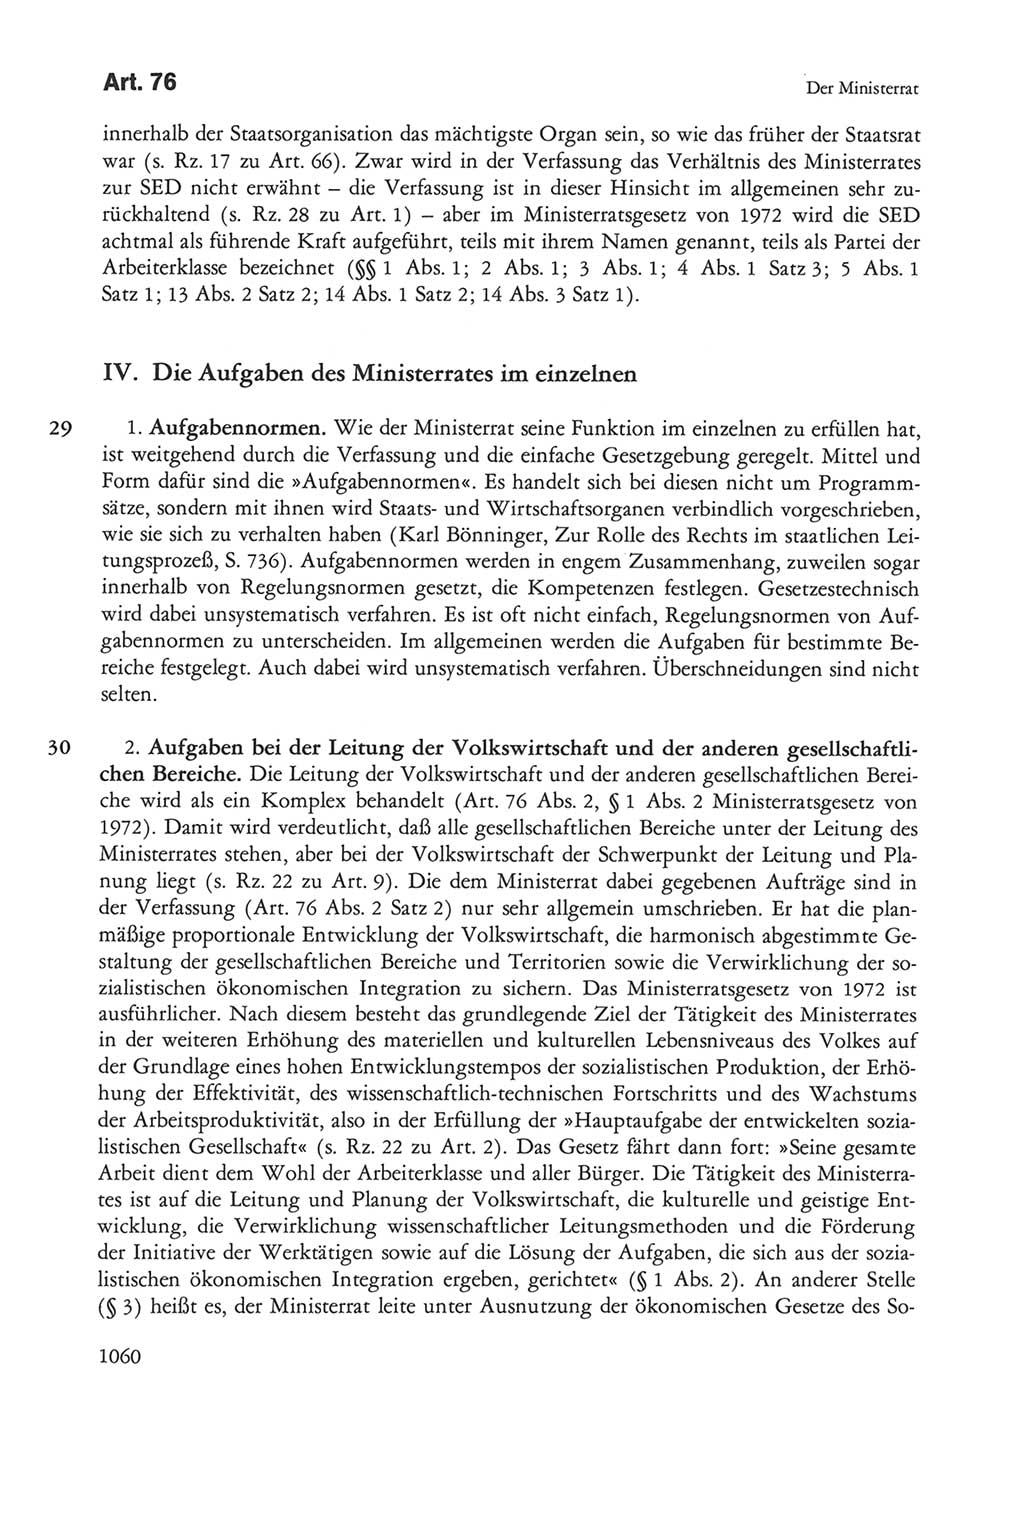 Die sozialistische Verfassung der Deutschen Demokratischen Republik (DDR), Kommentar 1982, Seite 1060 (Soz. Verf. DDR Komm. 1982, S. 1060)